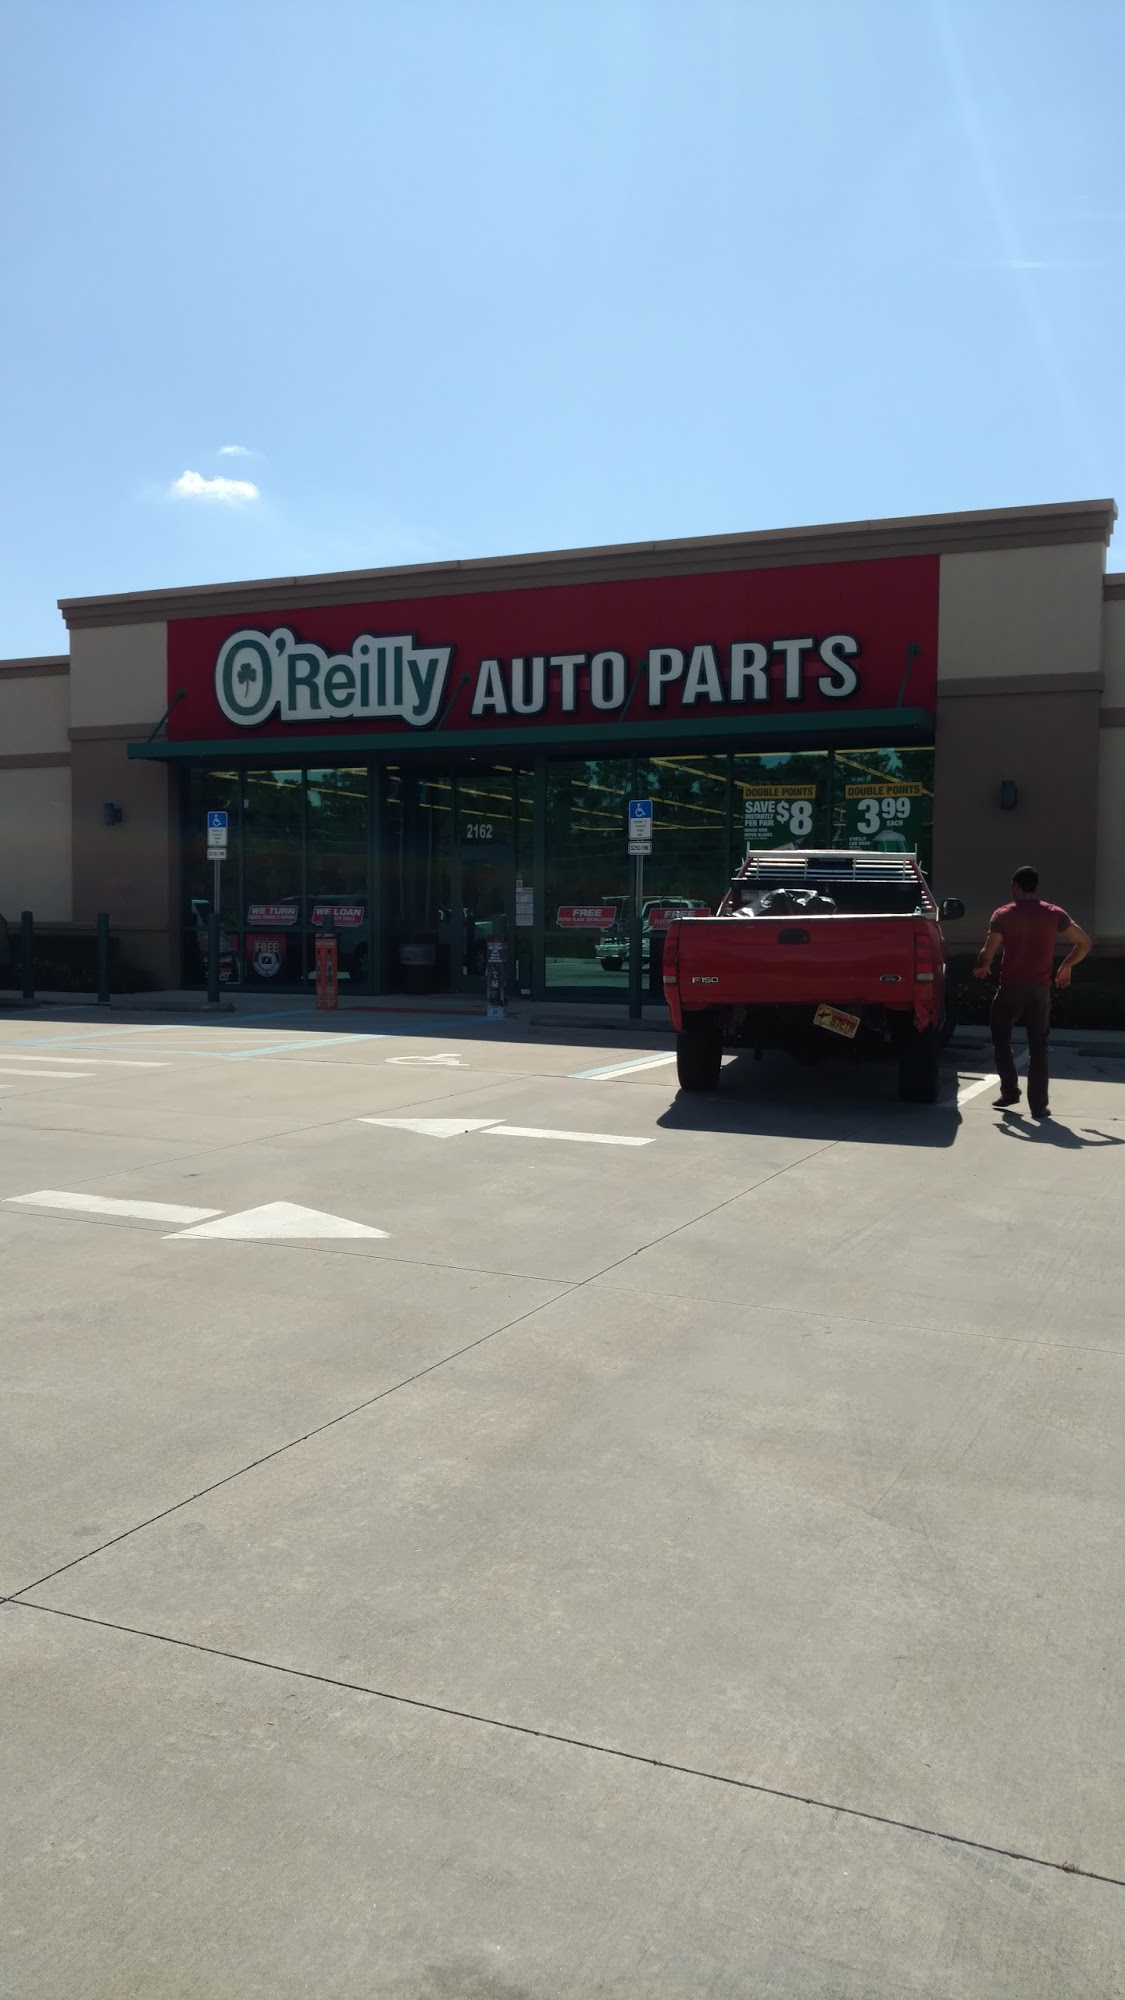 O'Reilly Auto Parts